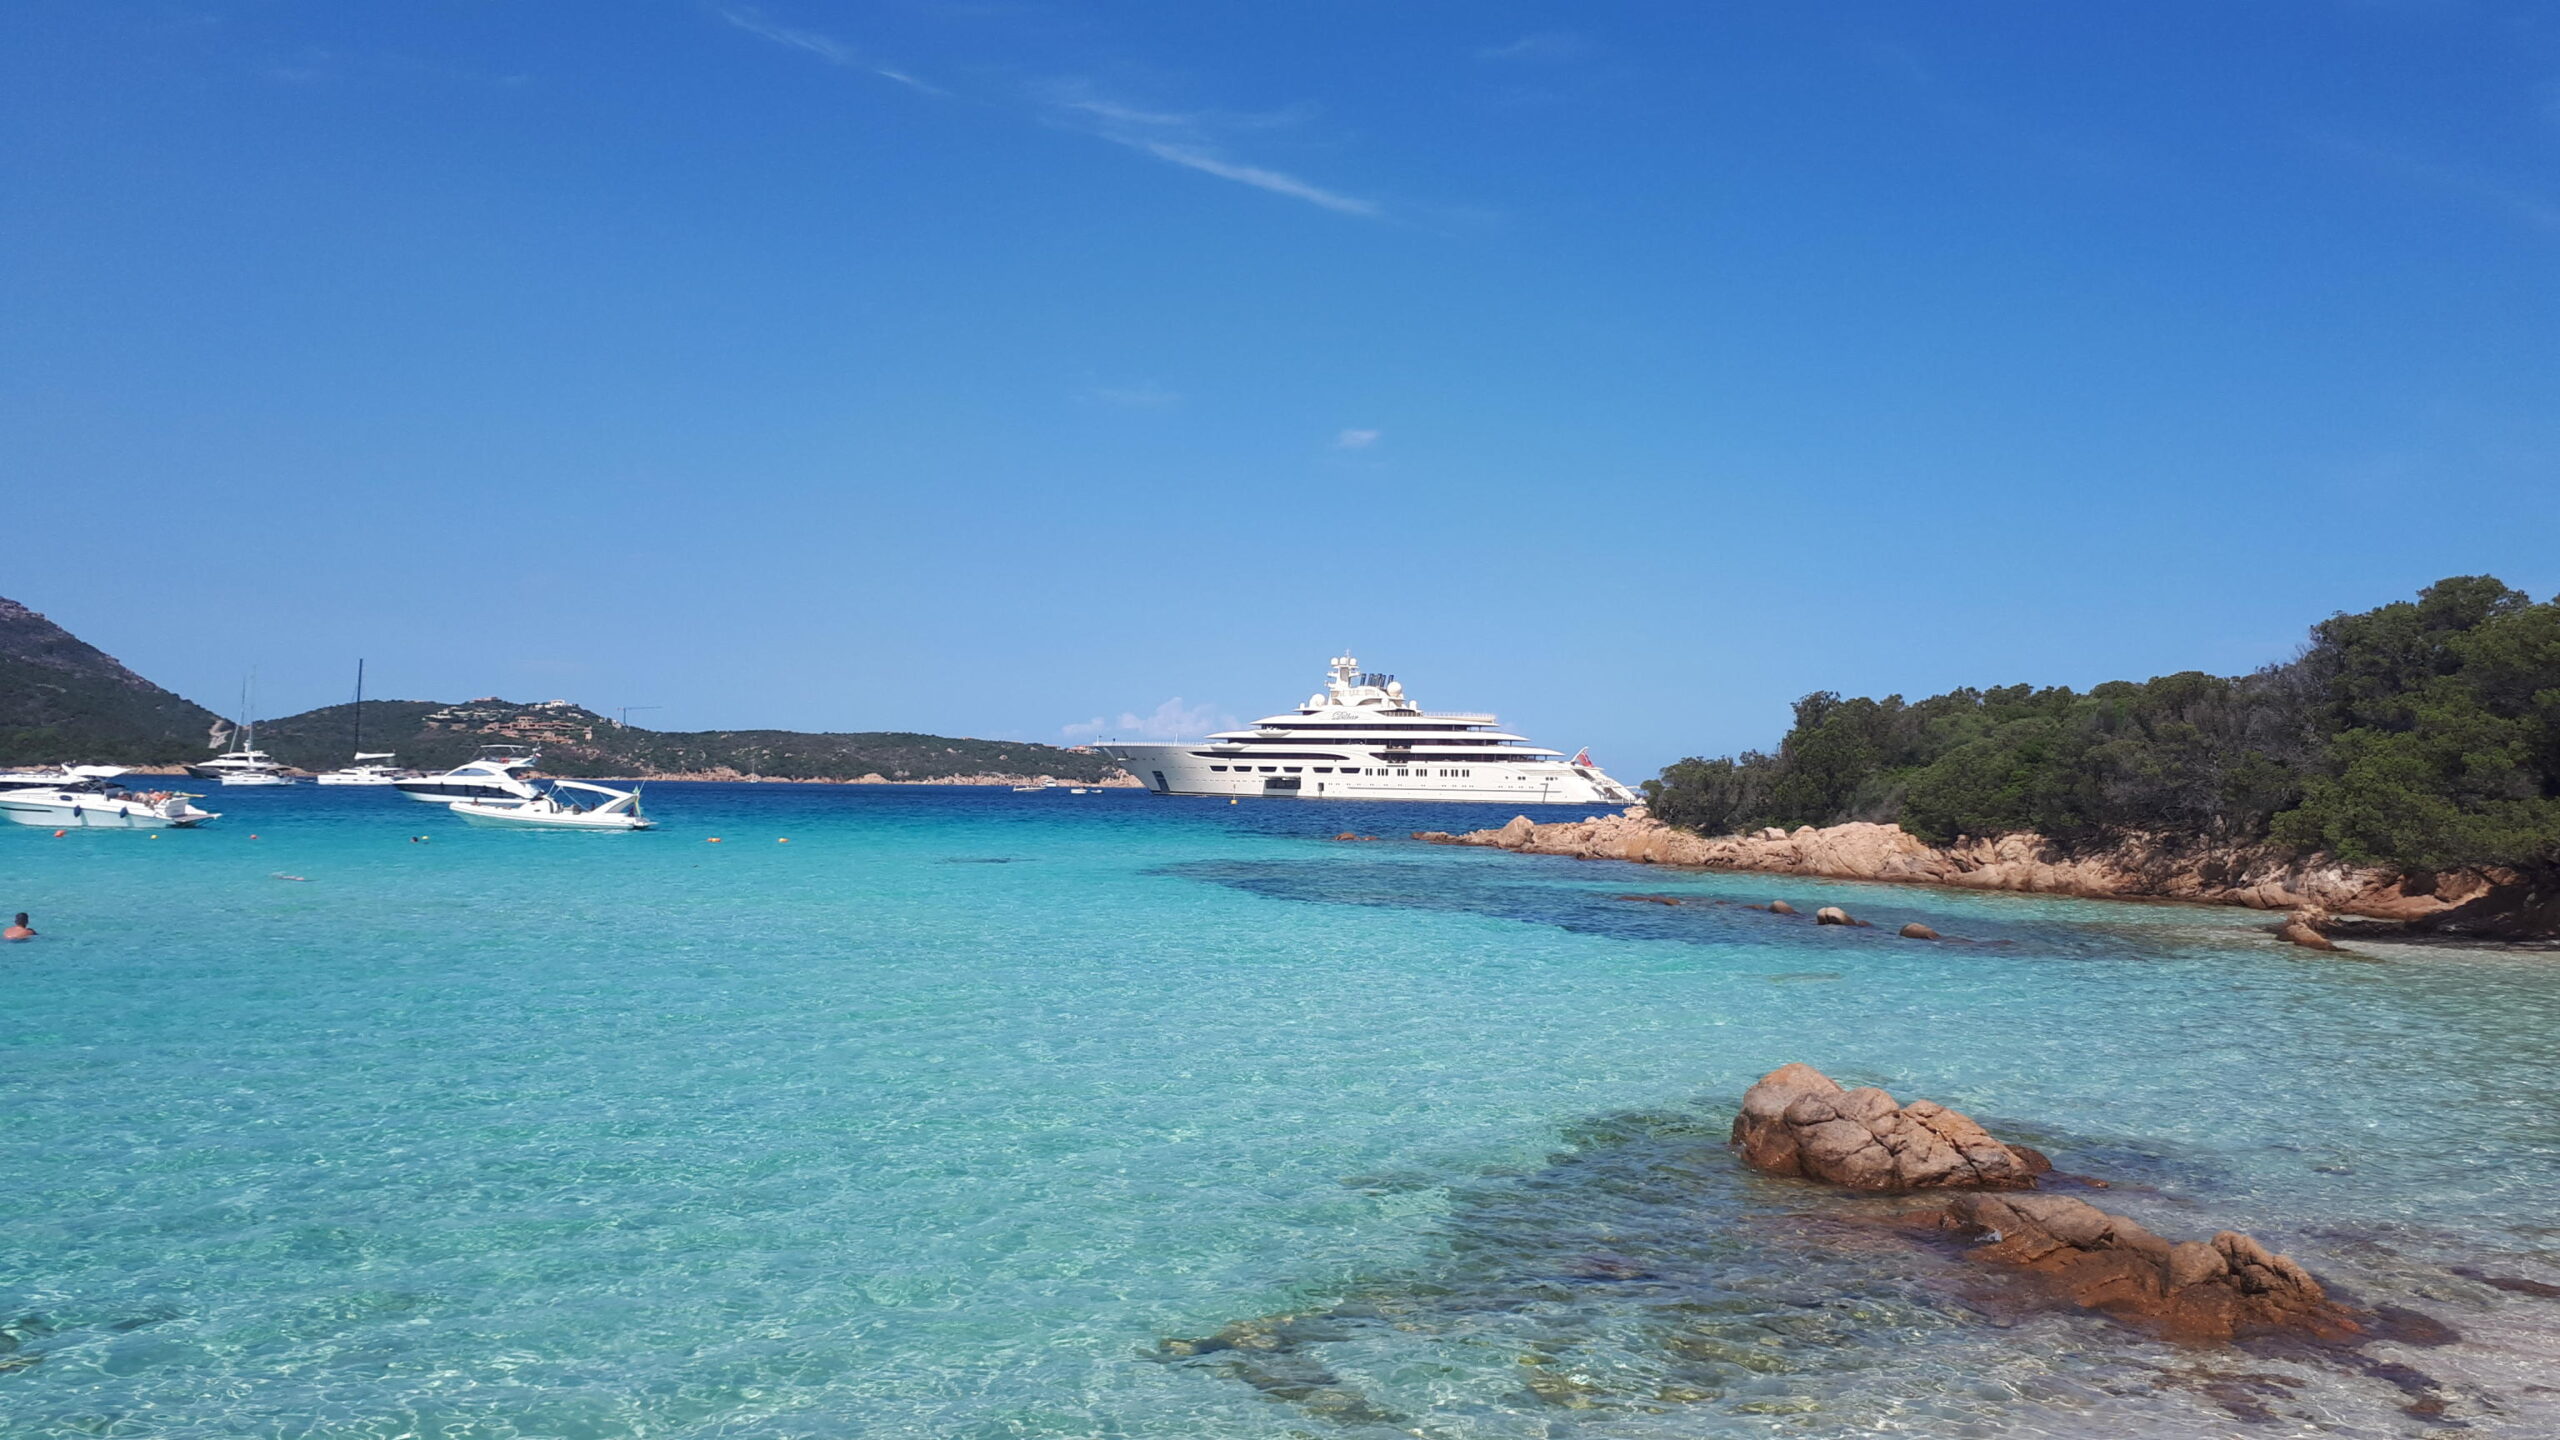 Costa Smeralda resta in vetta come porto per super yacht